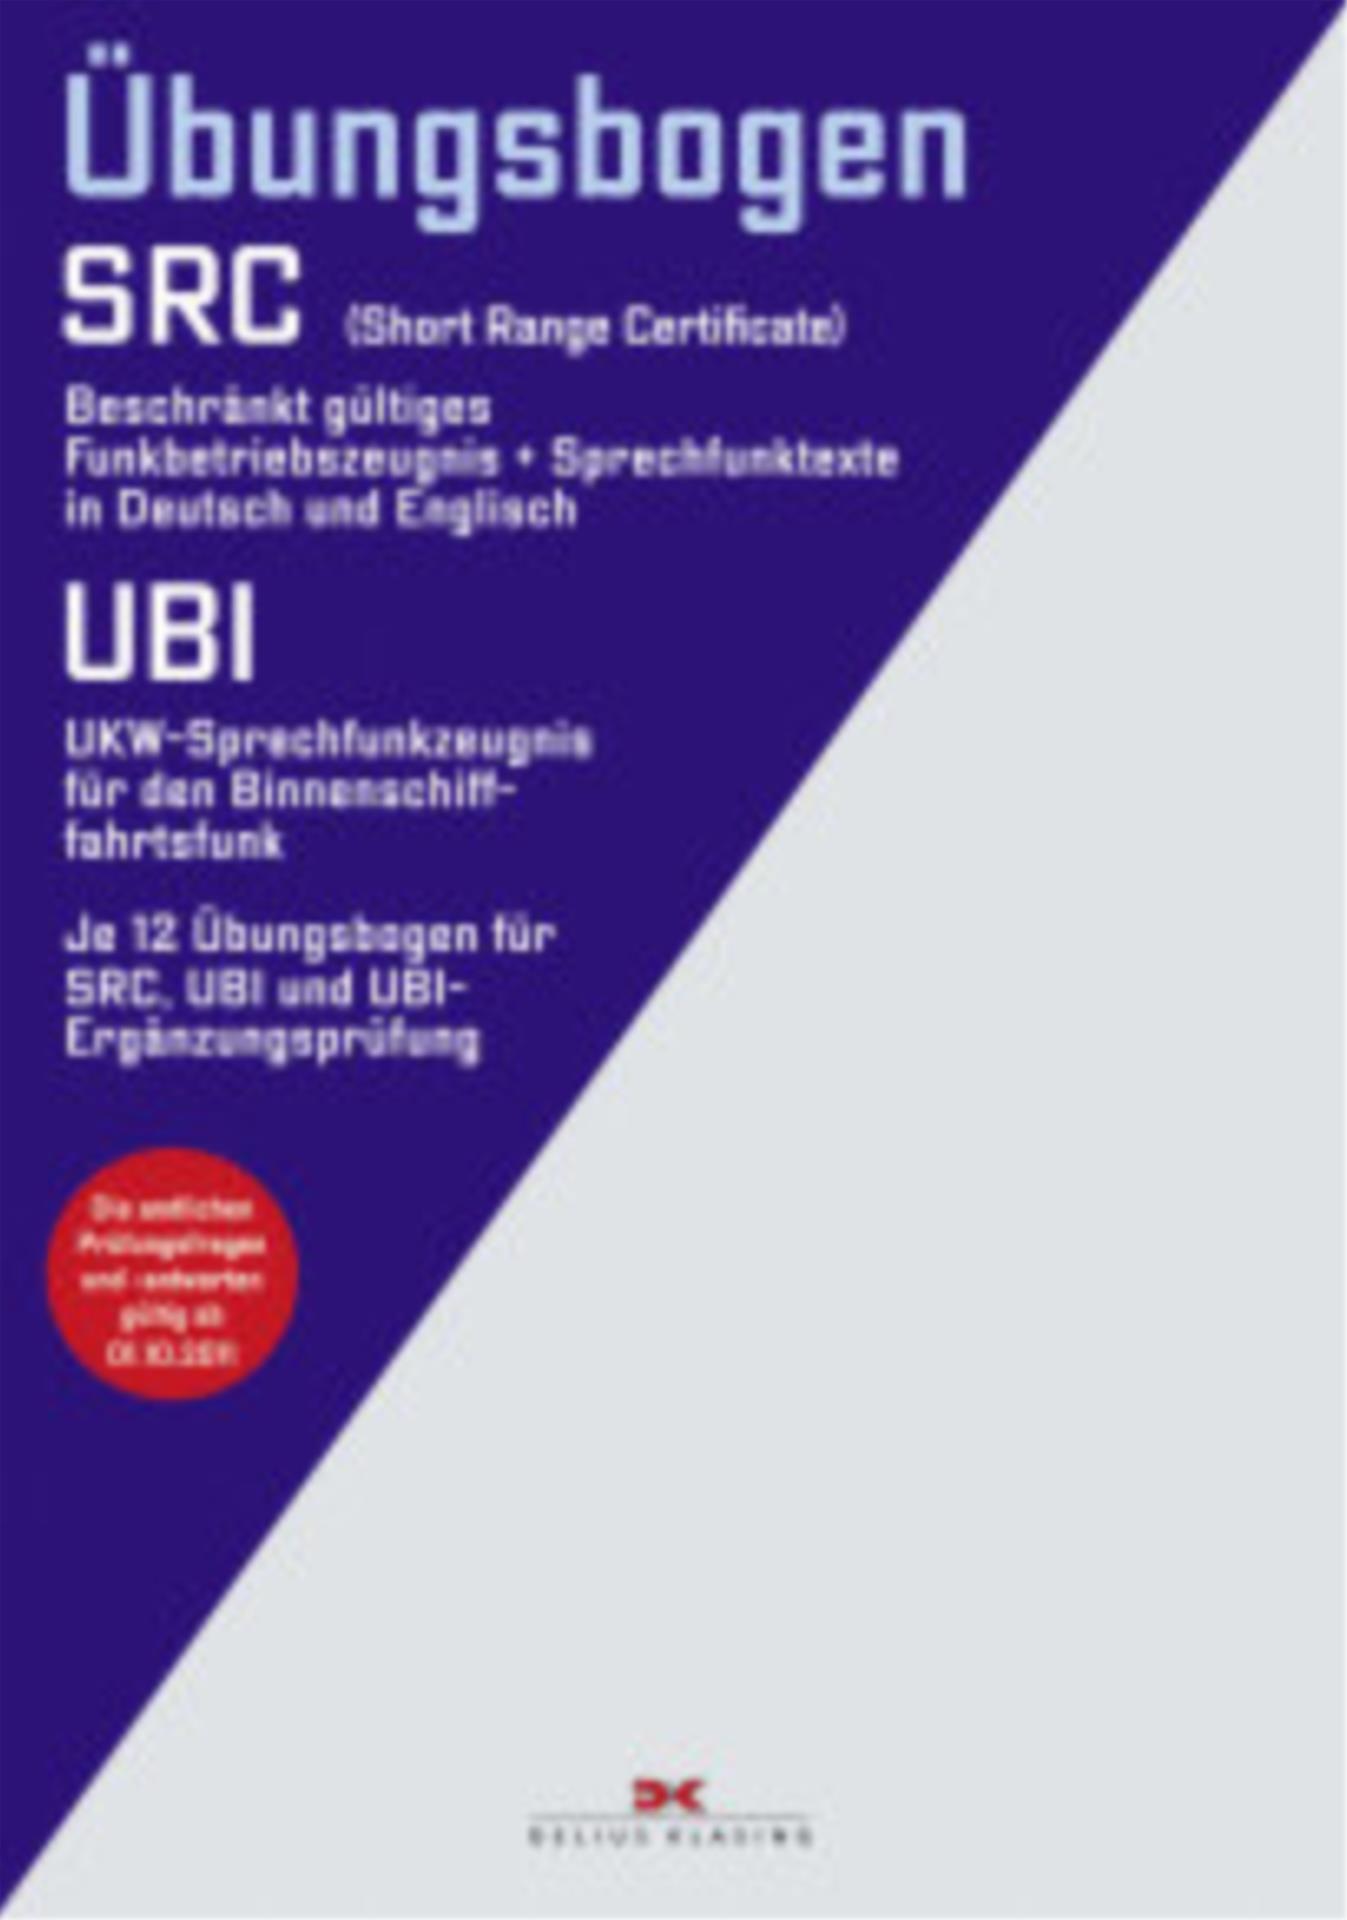 Funkbetriebszeugnis (SRC) UKW-Sprechfunk Binnen (UBI)